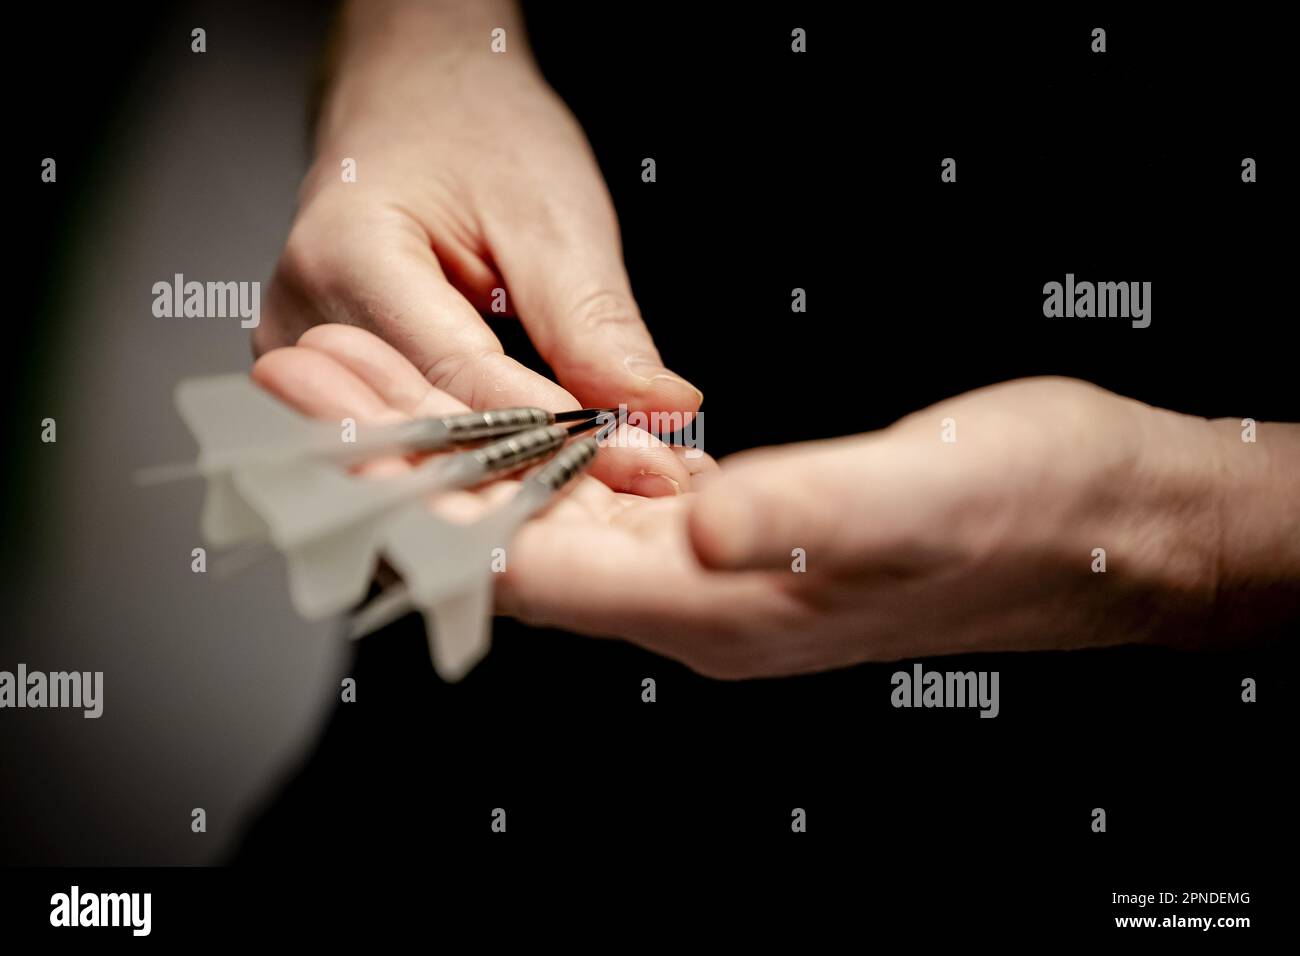 DELFT - Raymond van Barneveld lors d'un test d'un nouveau dart développé par des chercheurs de tu Delft. Selon les chercheurs, il s'agit d'une dart qui est presque 50 pour cent plus précise qu'une dart classique. ANP ROBIN VAN LONKHUIJSEN pays-bas sortie - belgique sortie Banque D'Images